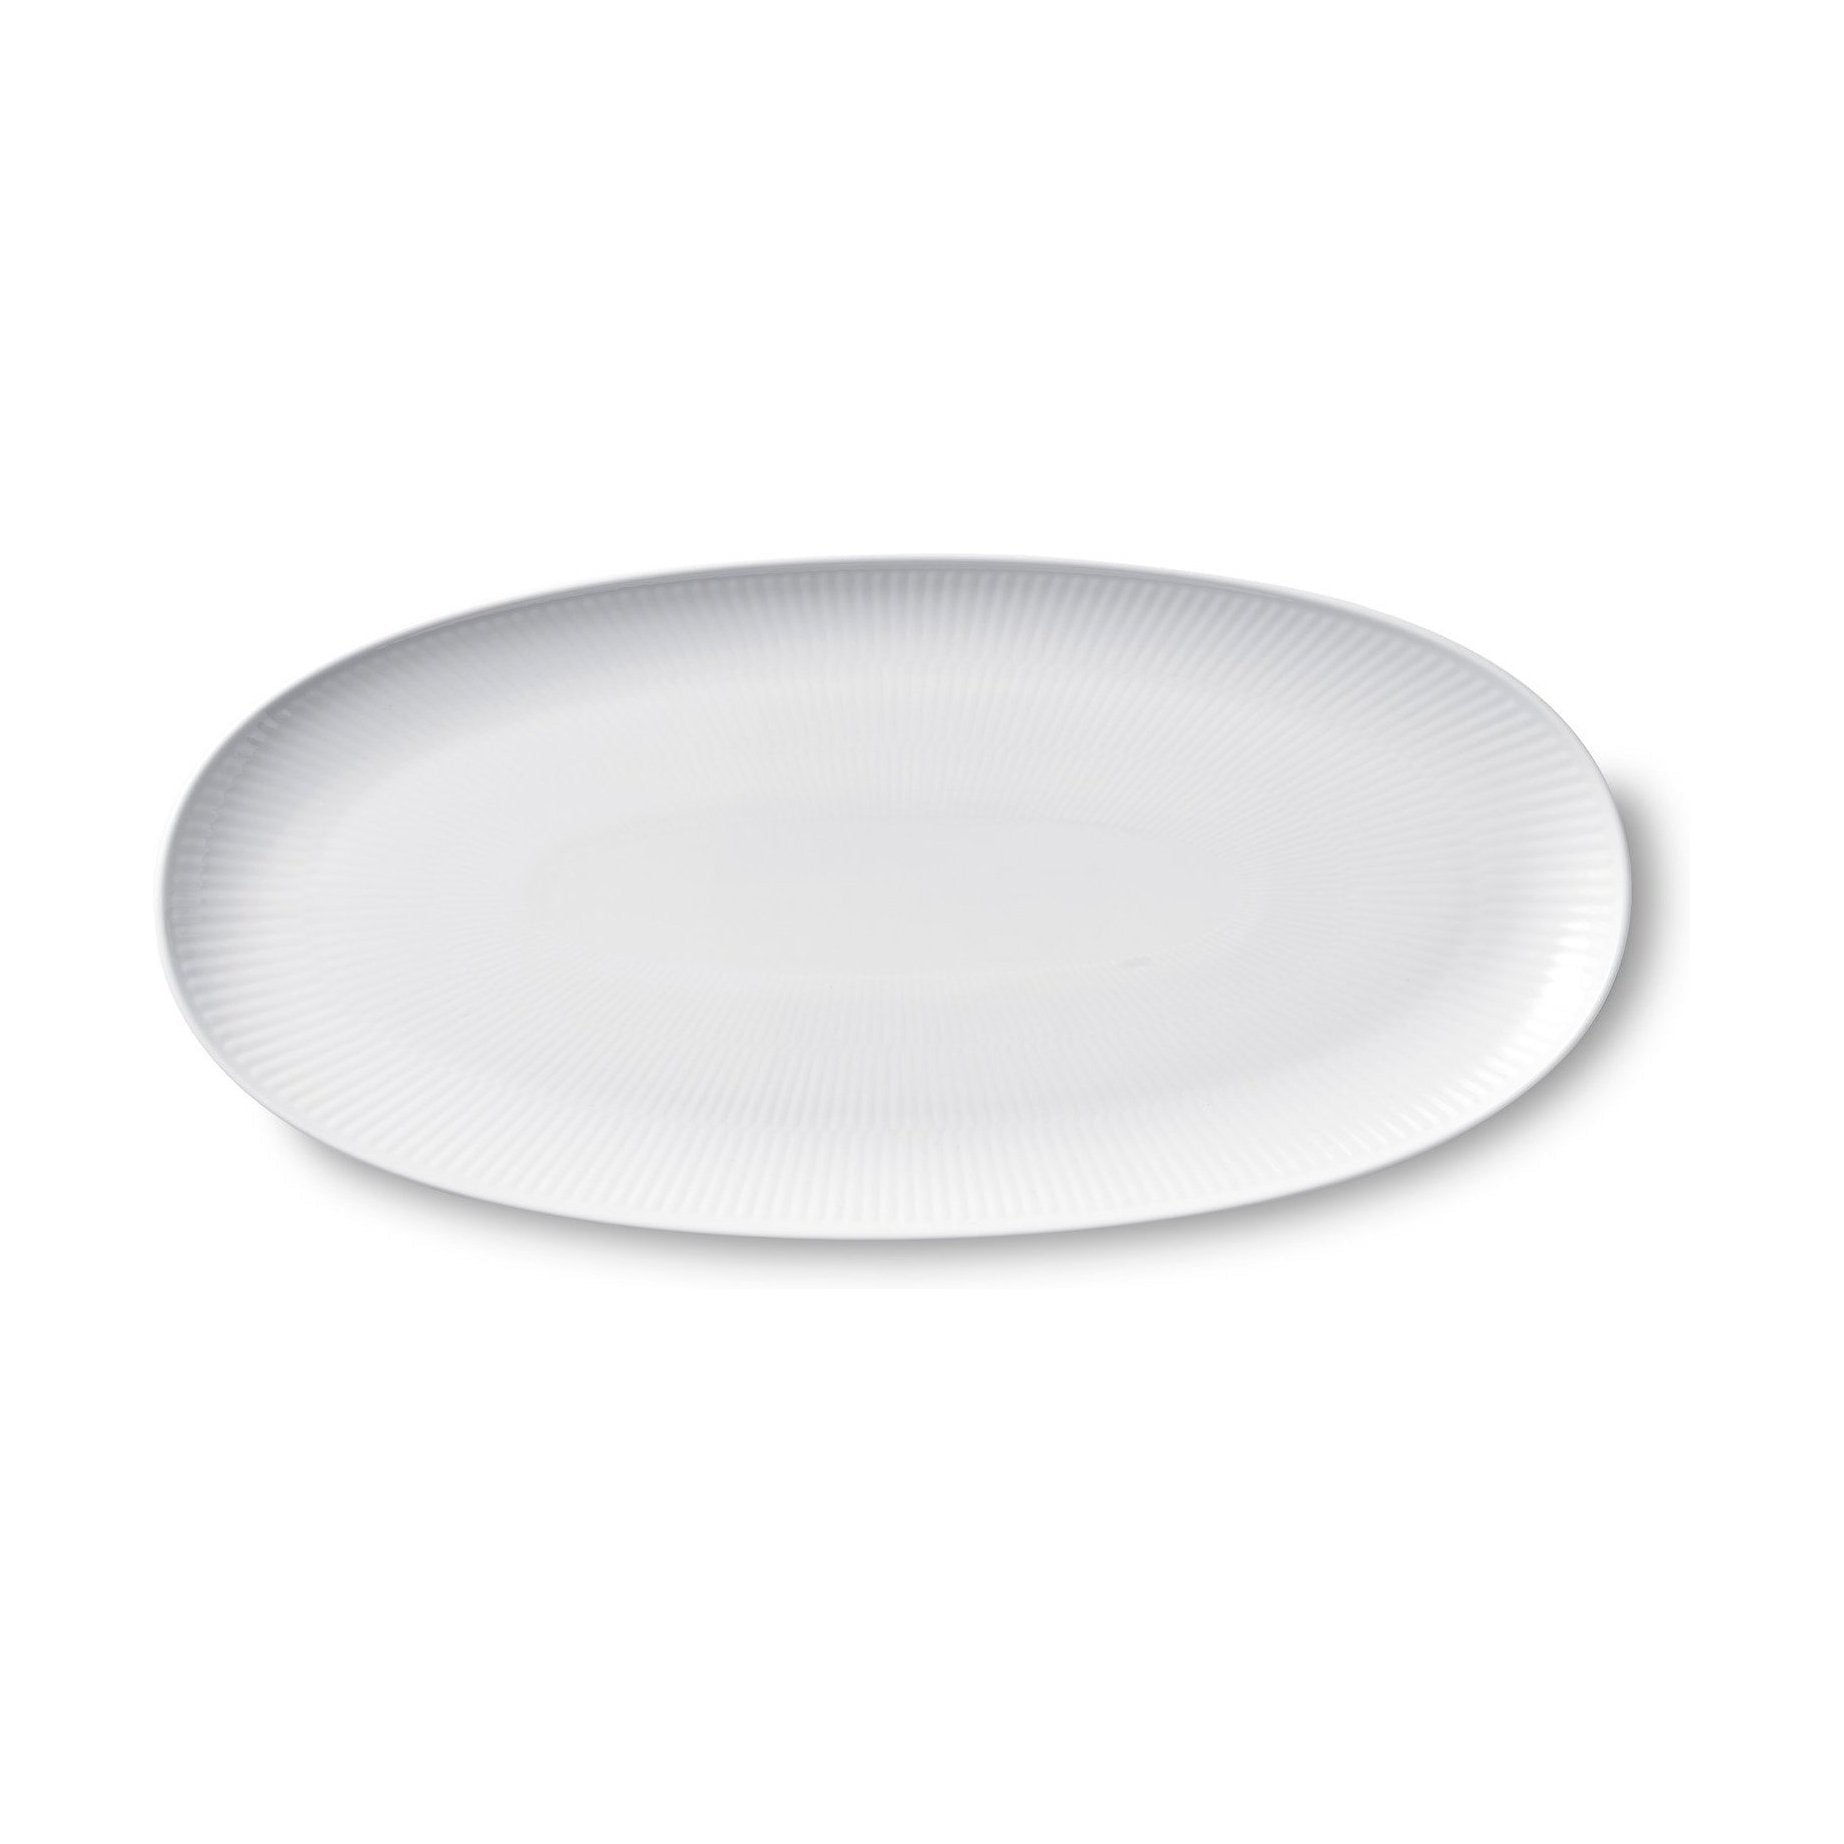 Royal Copenhagen White Fluted Oval Serving Plate, 37cm